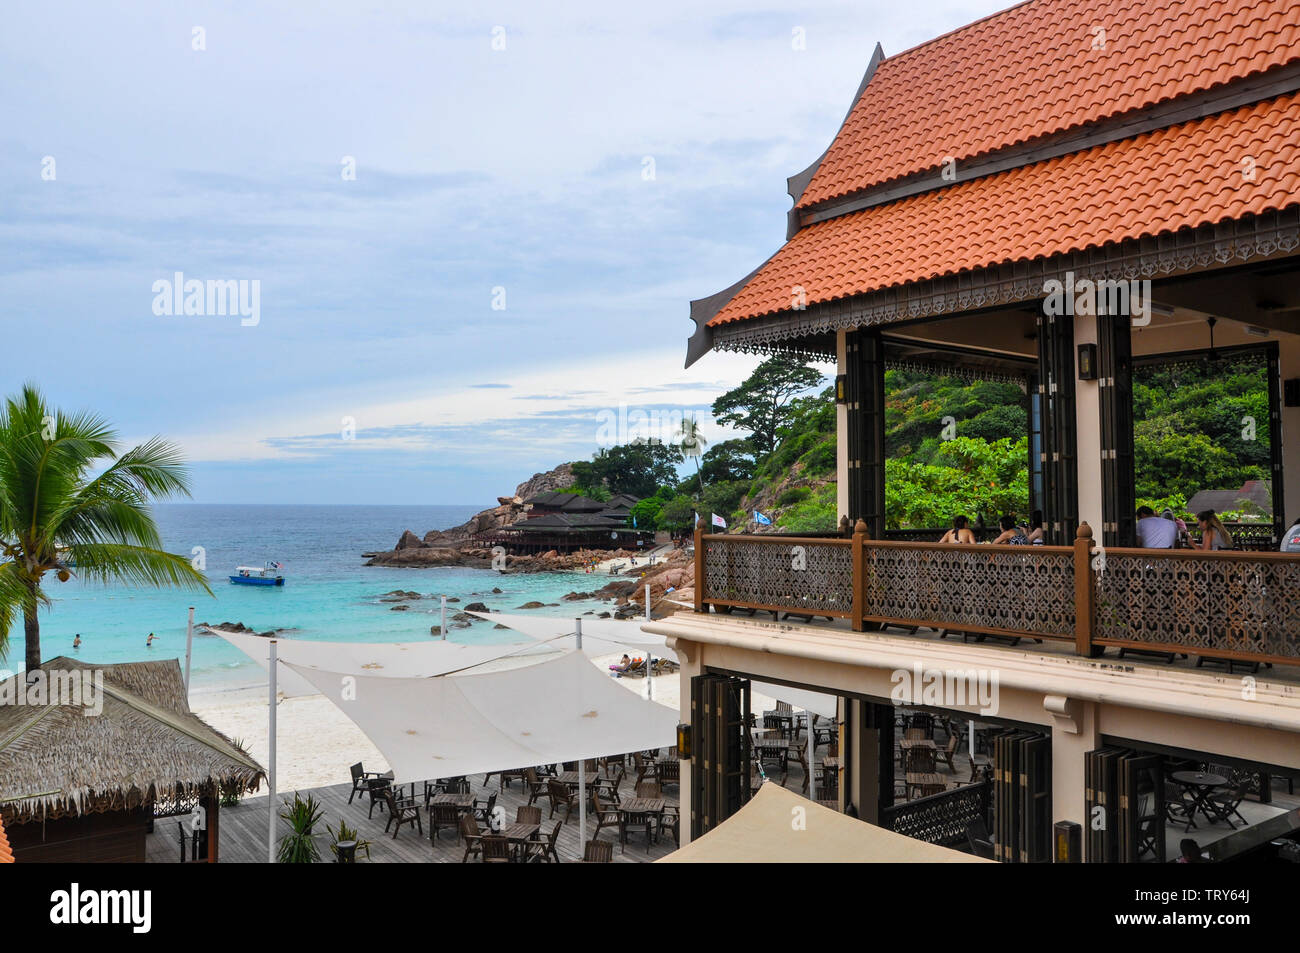 View of the restaurant in Laguna Redang Island Resort. Stock Photo